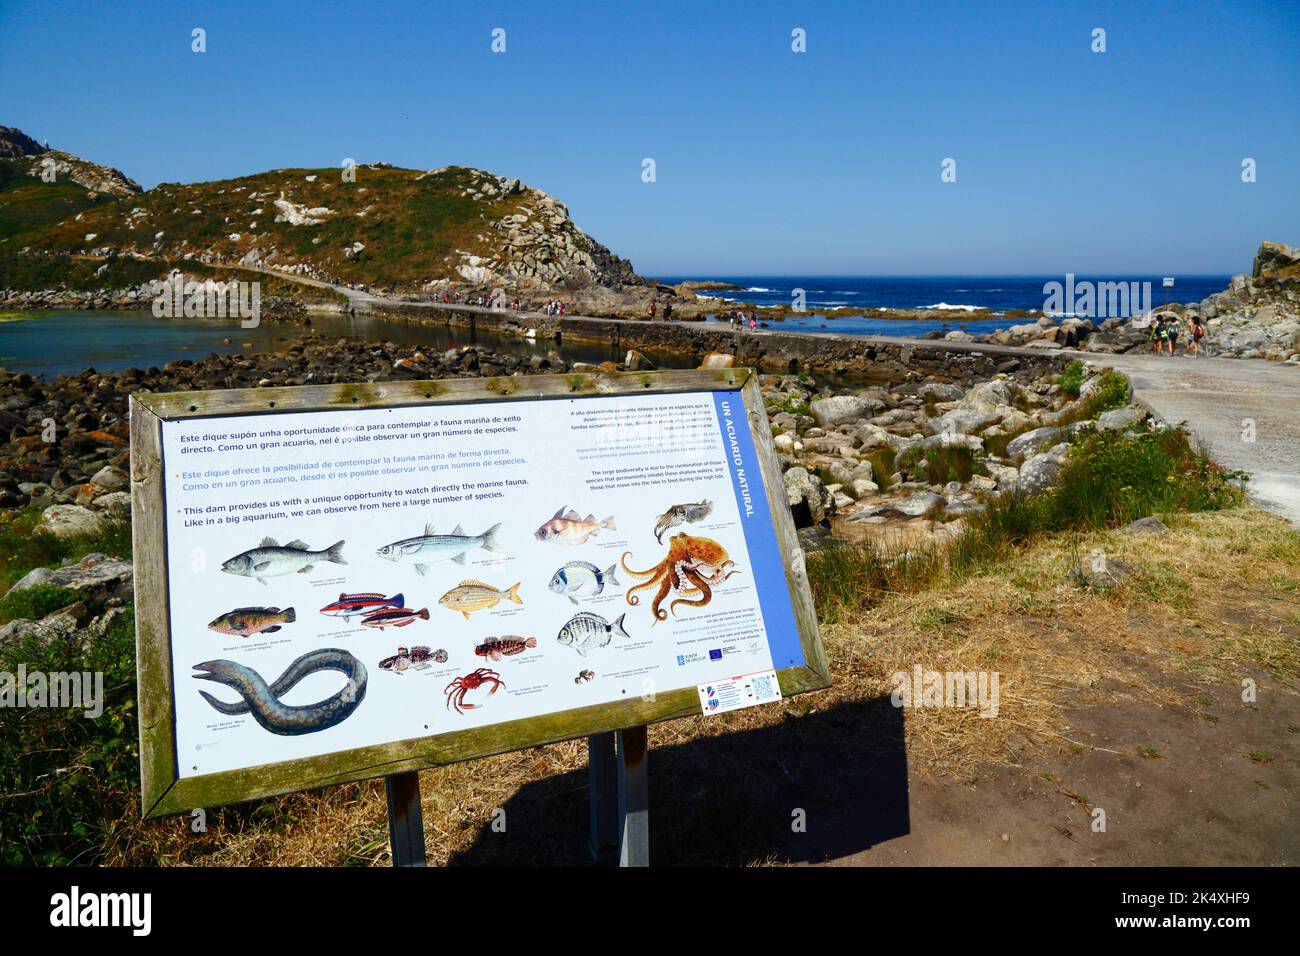 Carte d'information avec des photos des espèces de faune marine qui peuvent être vues dans les lagons près de la chaussée, Îles Cies, Galice, Espagne. Banque D'Images